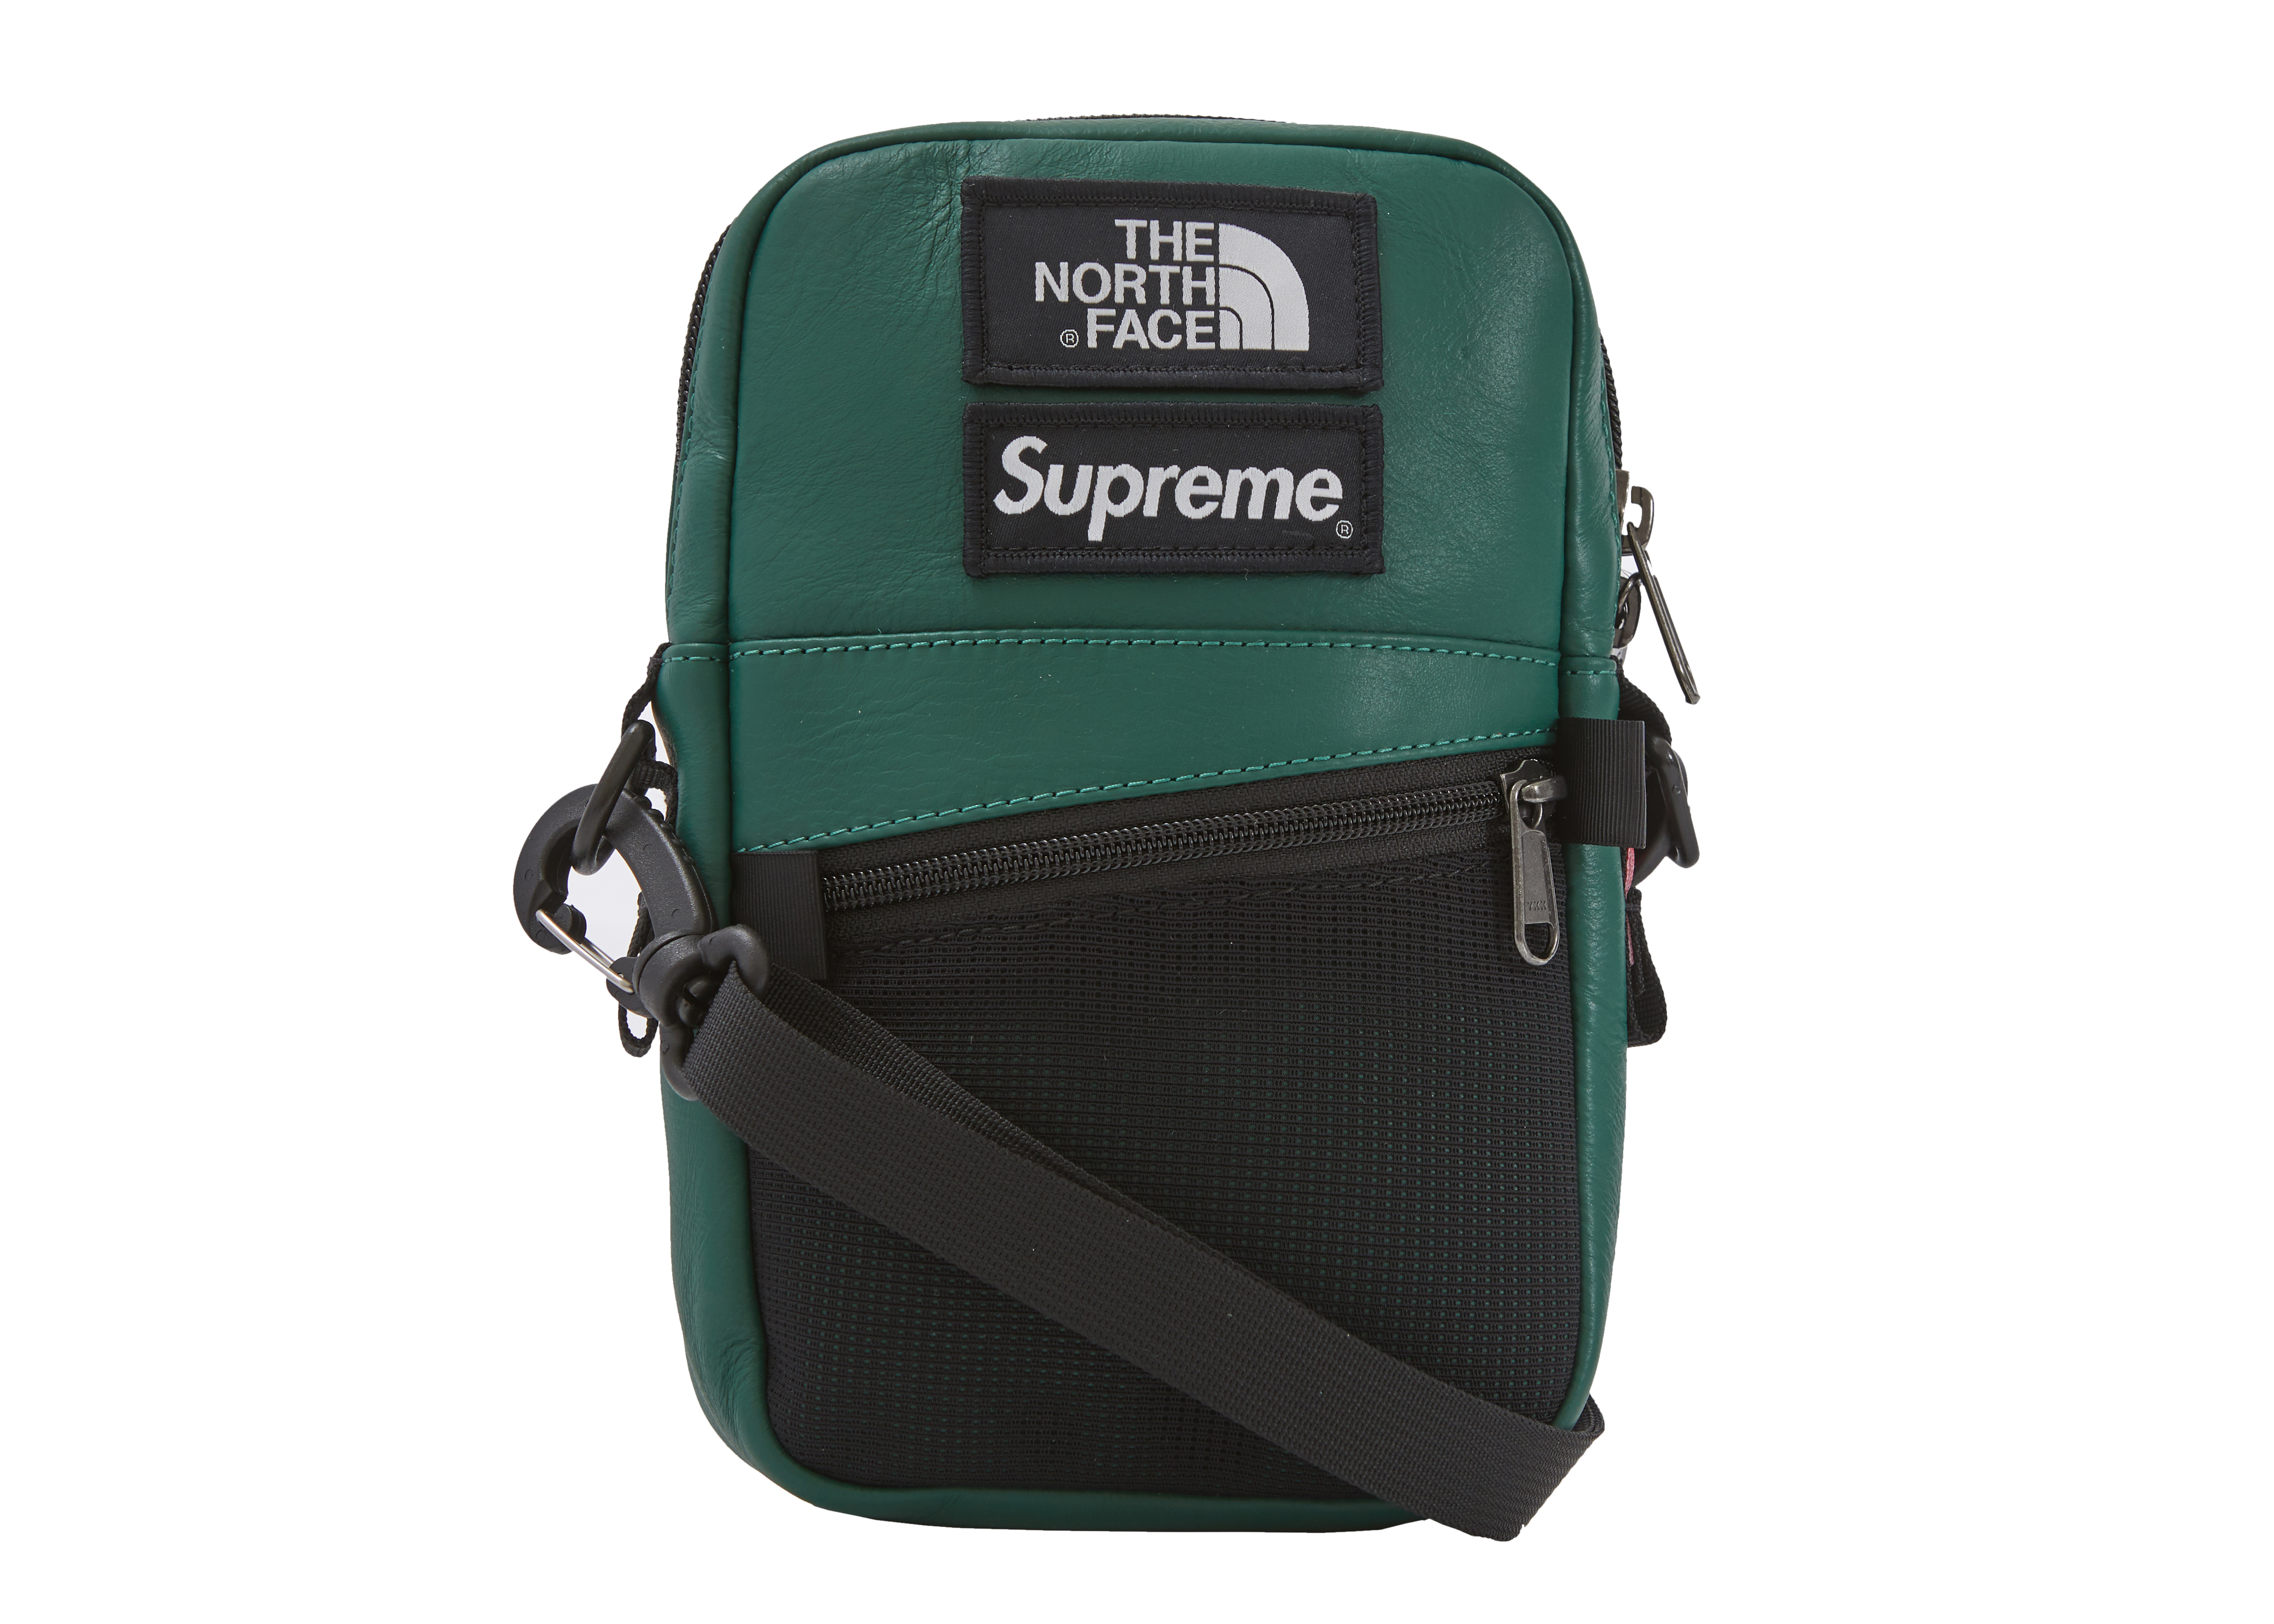 North Face Supreme Shoulder Bag Sale, SAVE 60% - aveclumiere.com